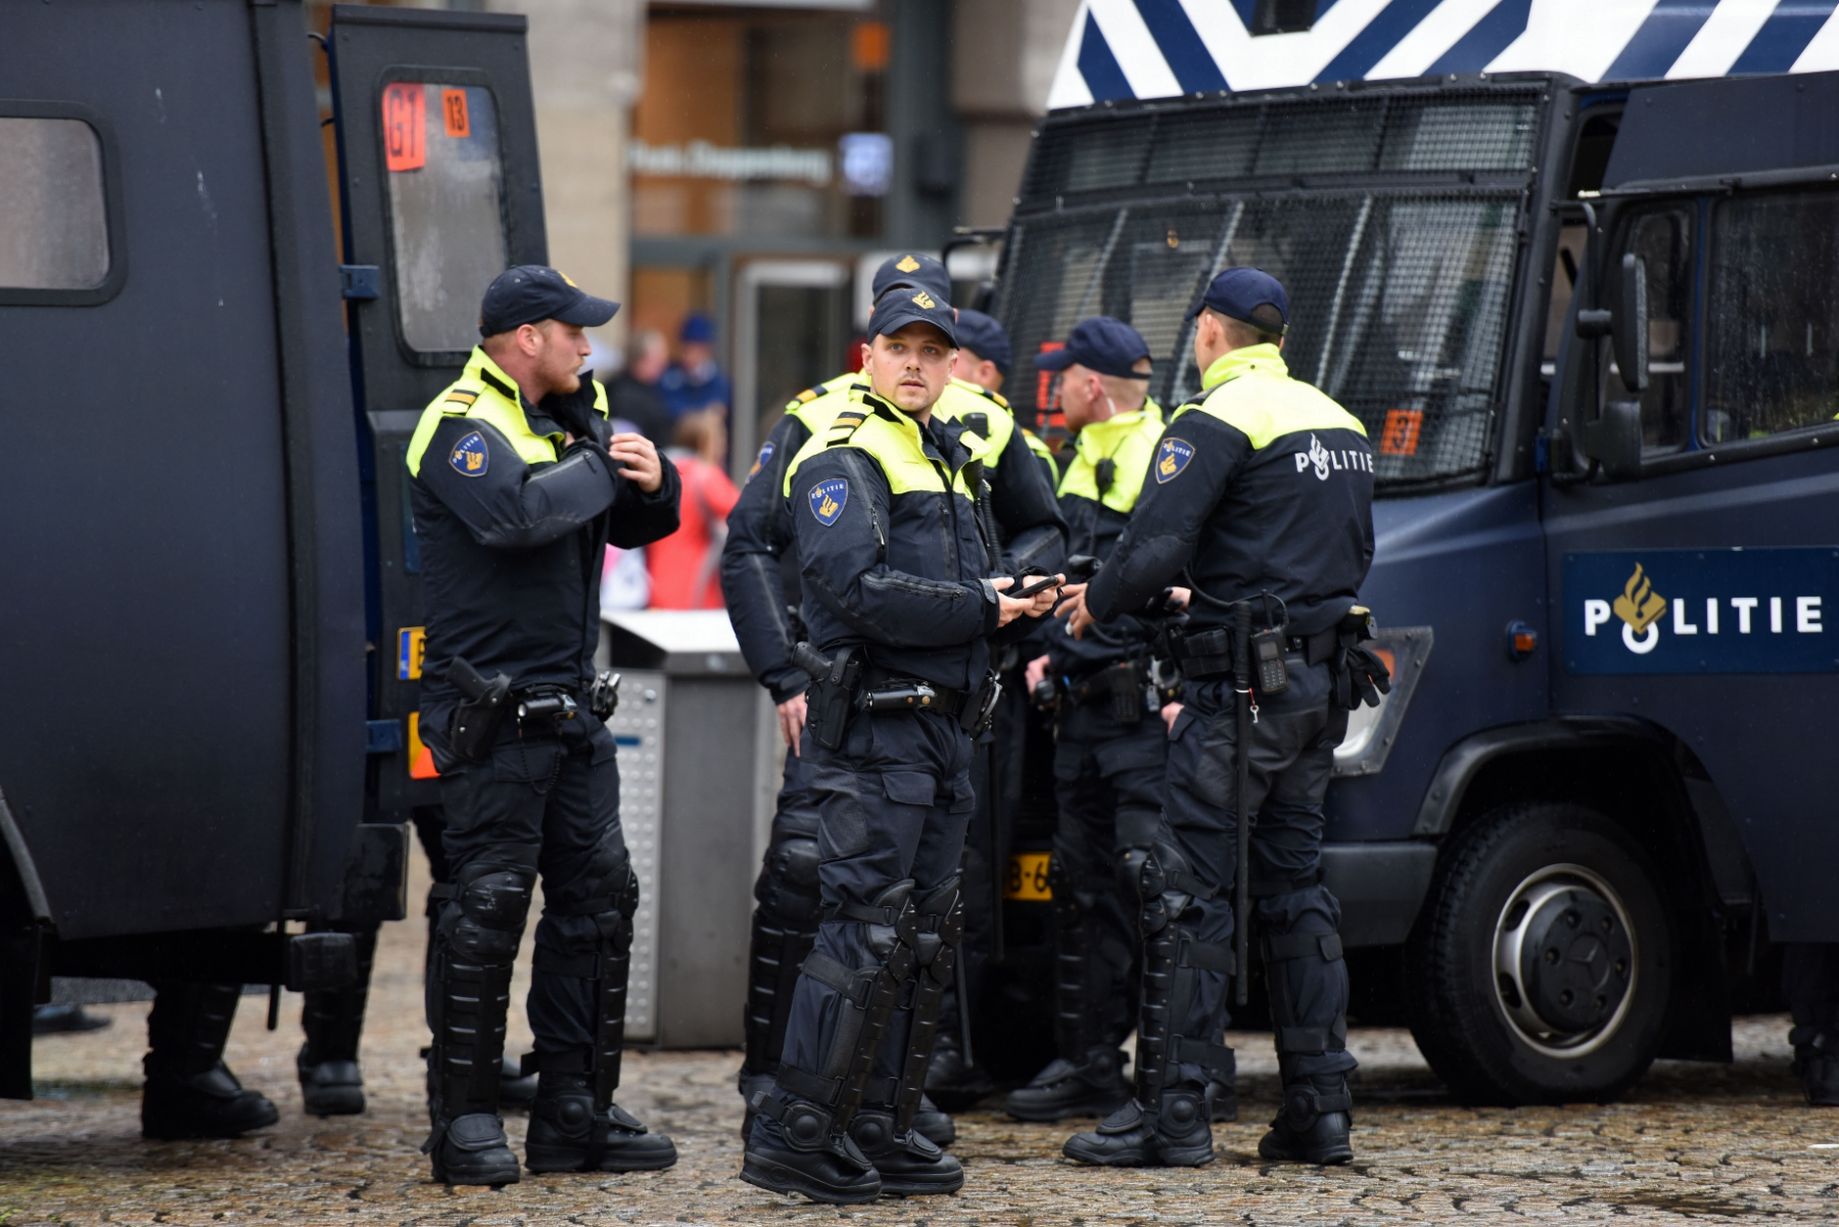 Επιθέσεις με μαχαίρι σε ολλανδική πόλη- Τραυματίες και ένας νεκρός (φωτό)